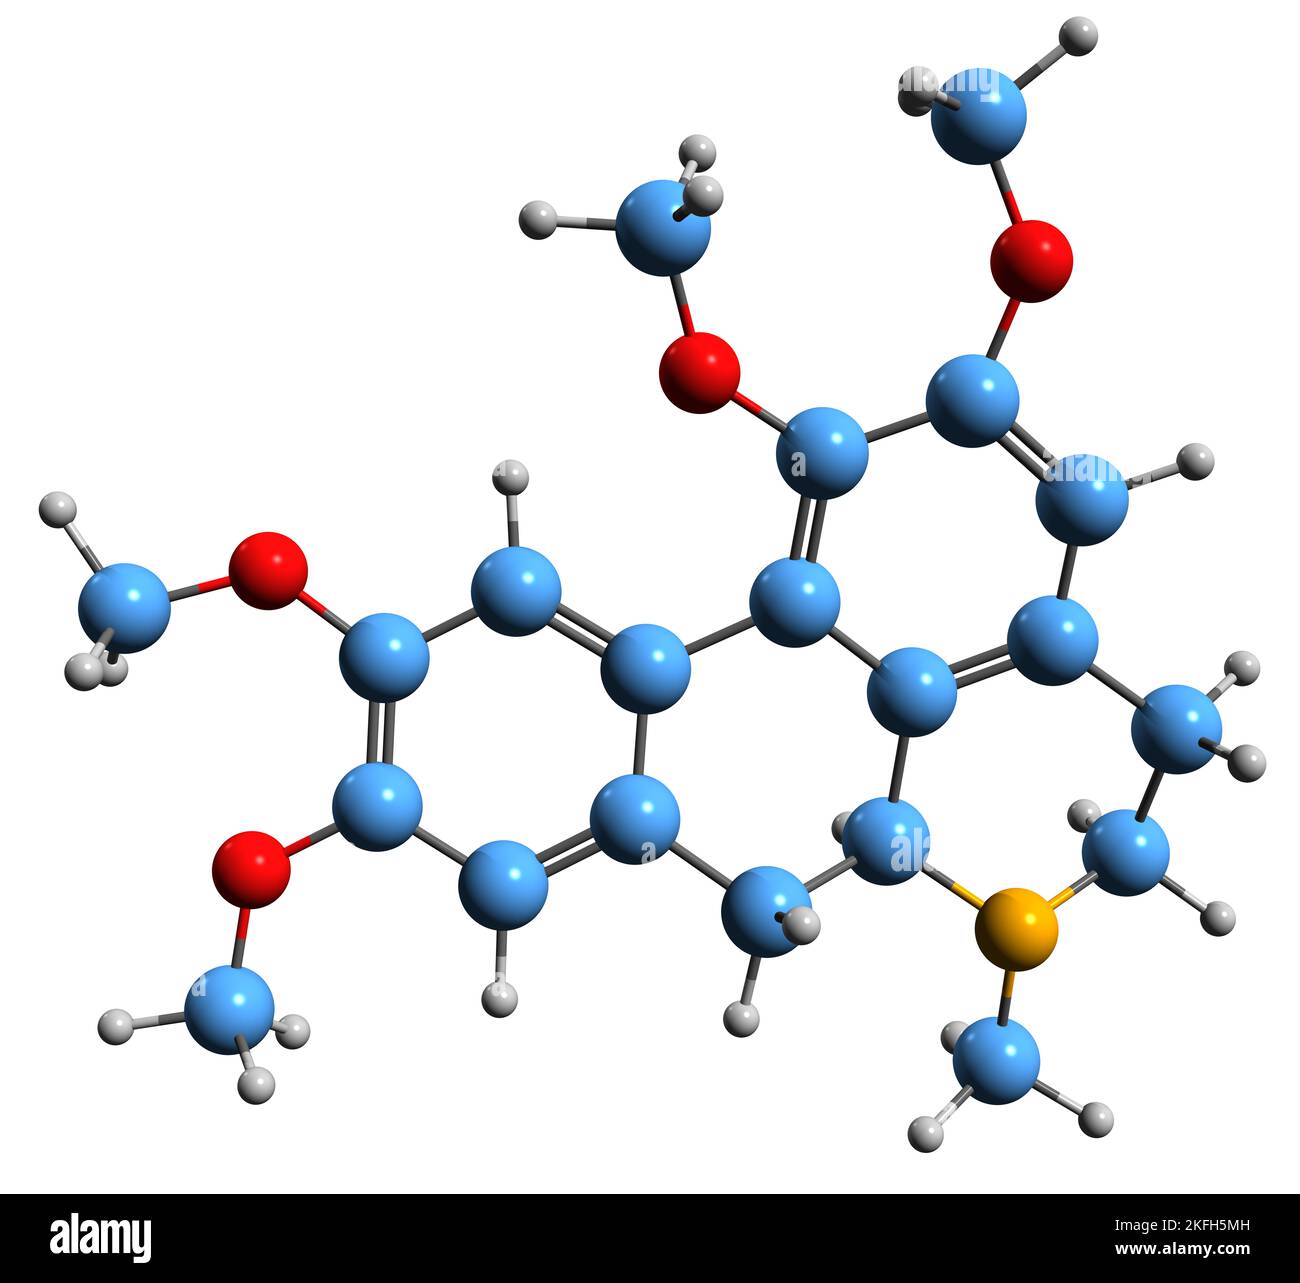 3D Bild der Glaucine-Skelettformel - molekularchemische Struktur des auf weißem Hintergrund isolierten Aporphin-Alkaloids Stockfoto